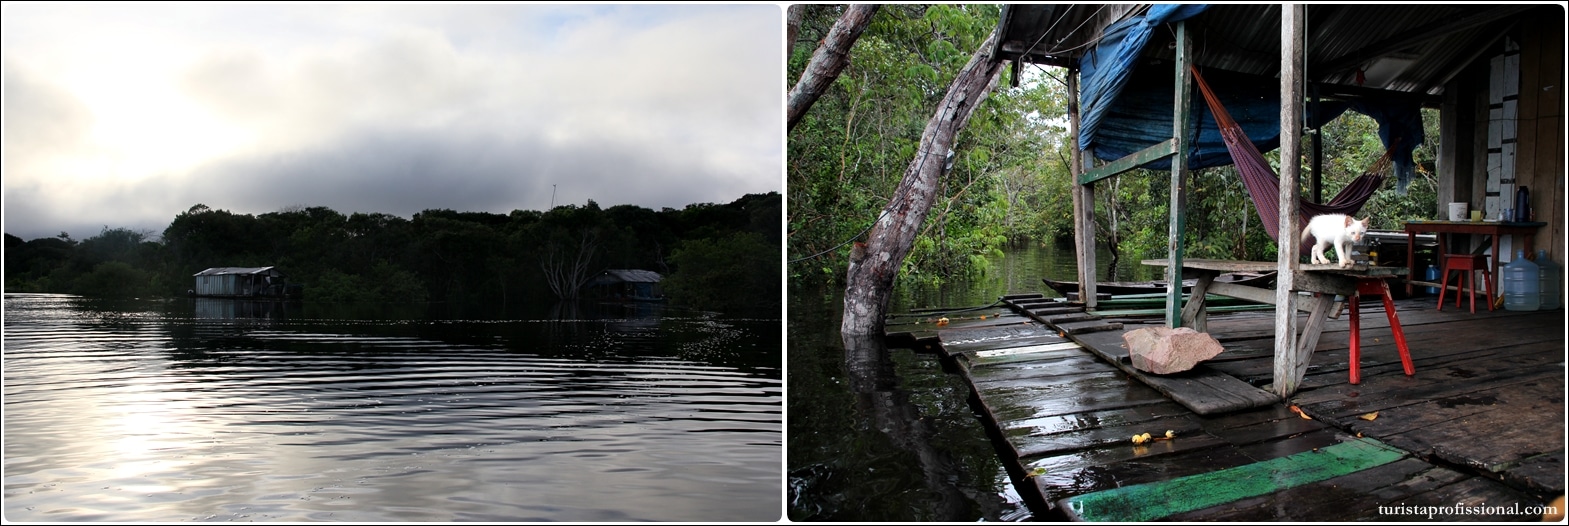 Viagem Floresta Amazônica - Turismo antropológico: dormir na casa de um ribeirinho em plena floresta amazônica